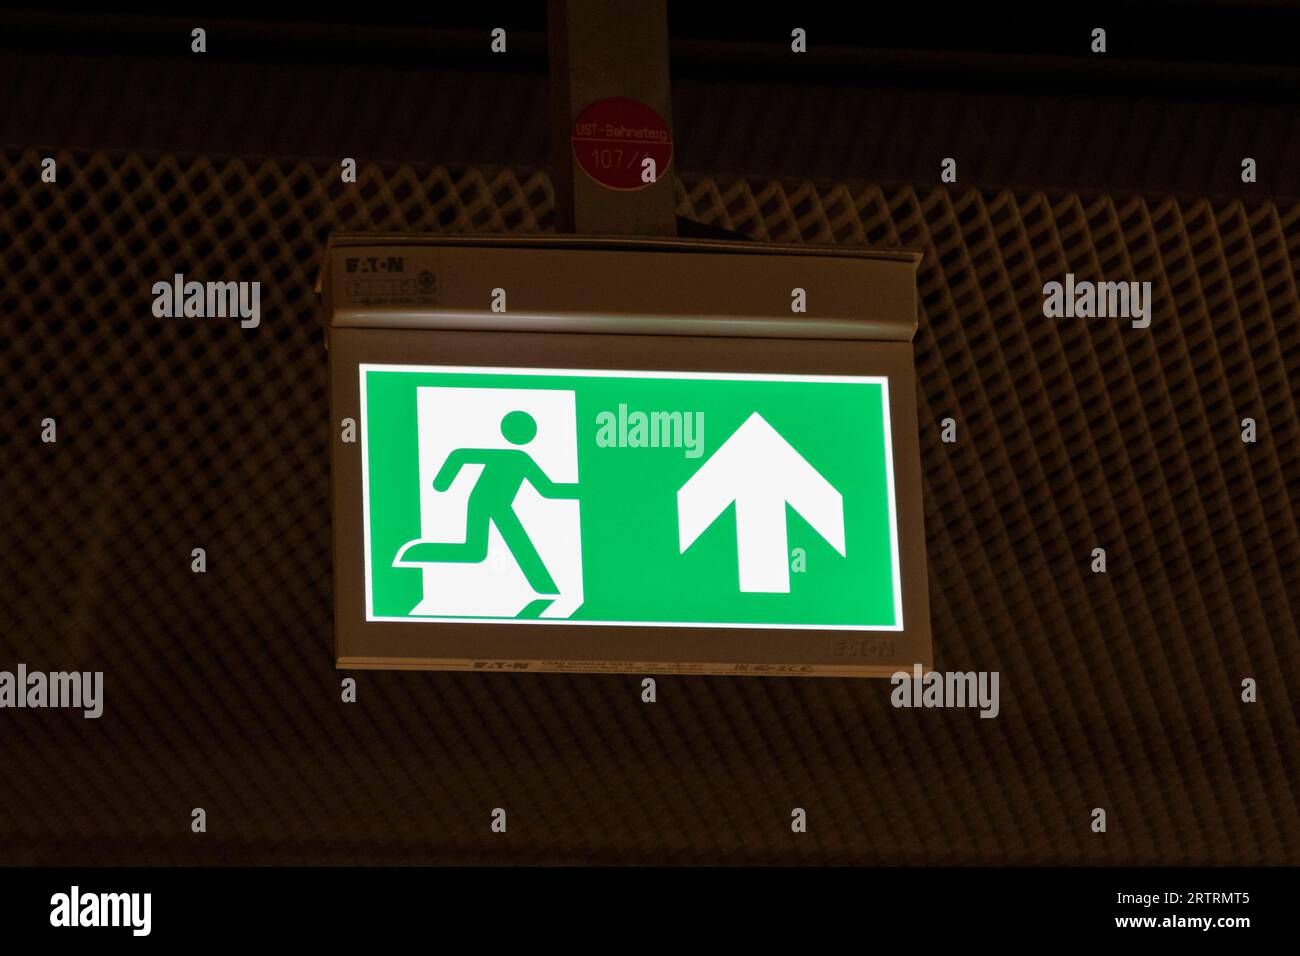 Immagine simbolica, via di fuga, segnale luminoso verde con freccia di direzione per uscita di emergenza, Germania Foto Stock